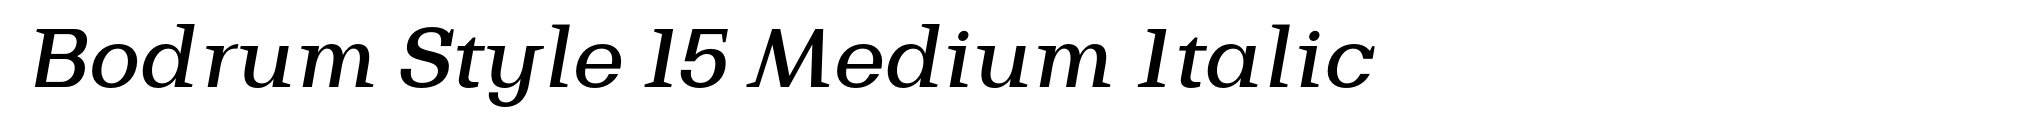 Bodrum Style 15 Medium Italic image